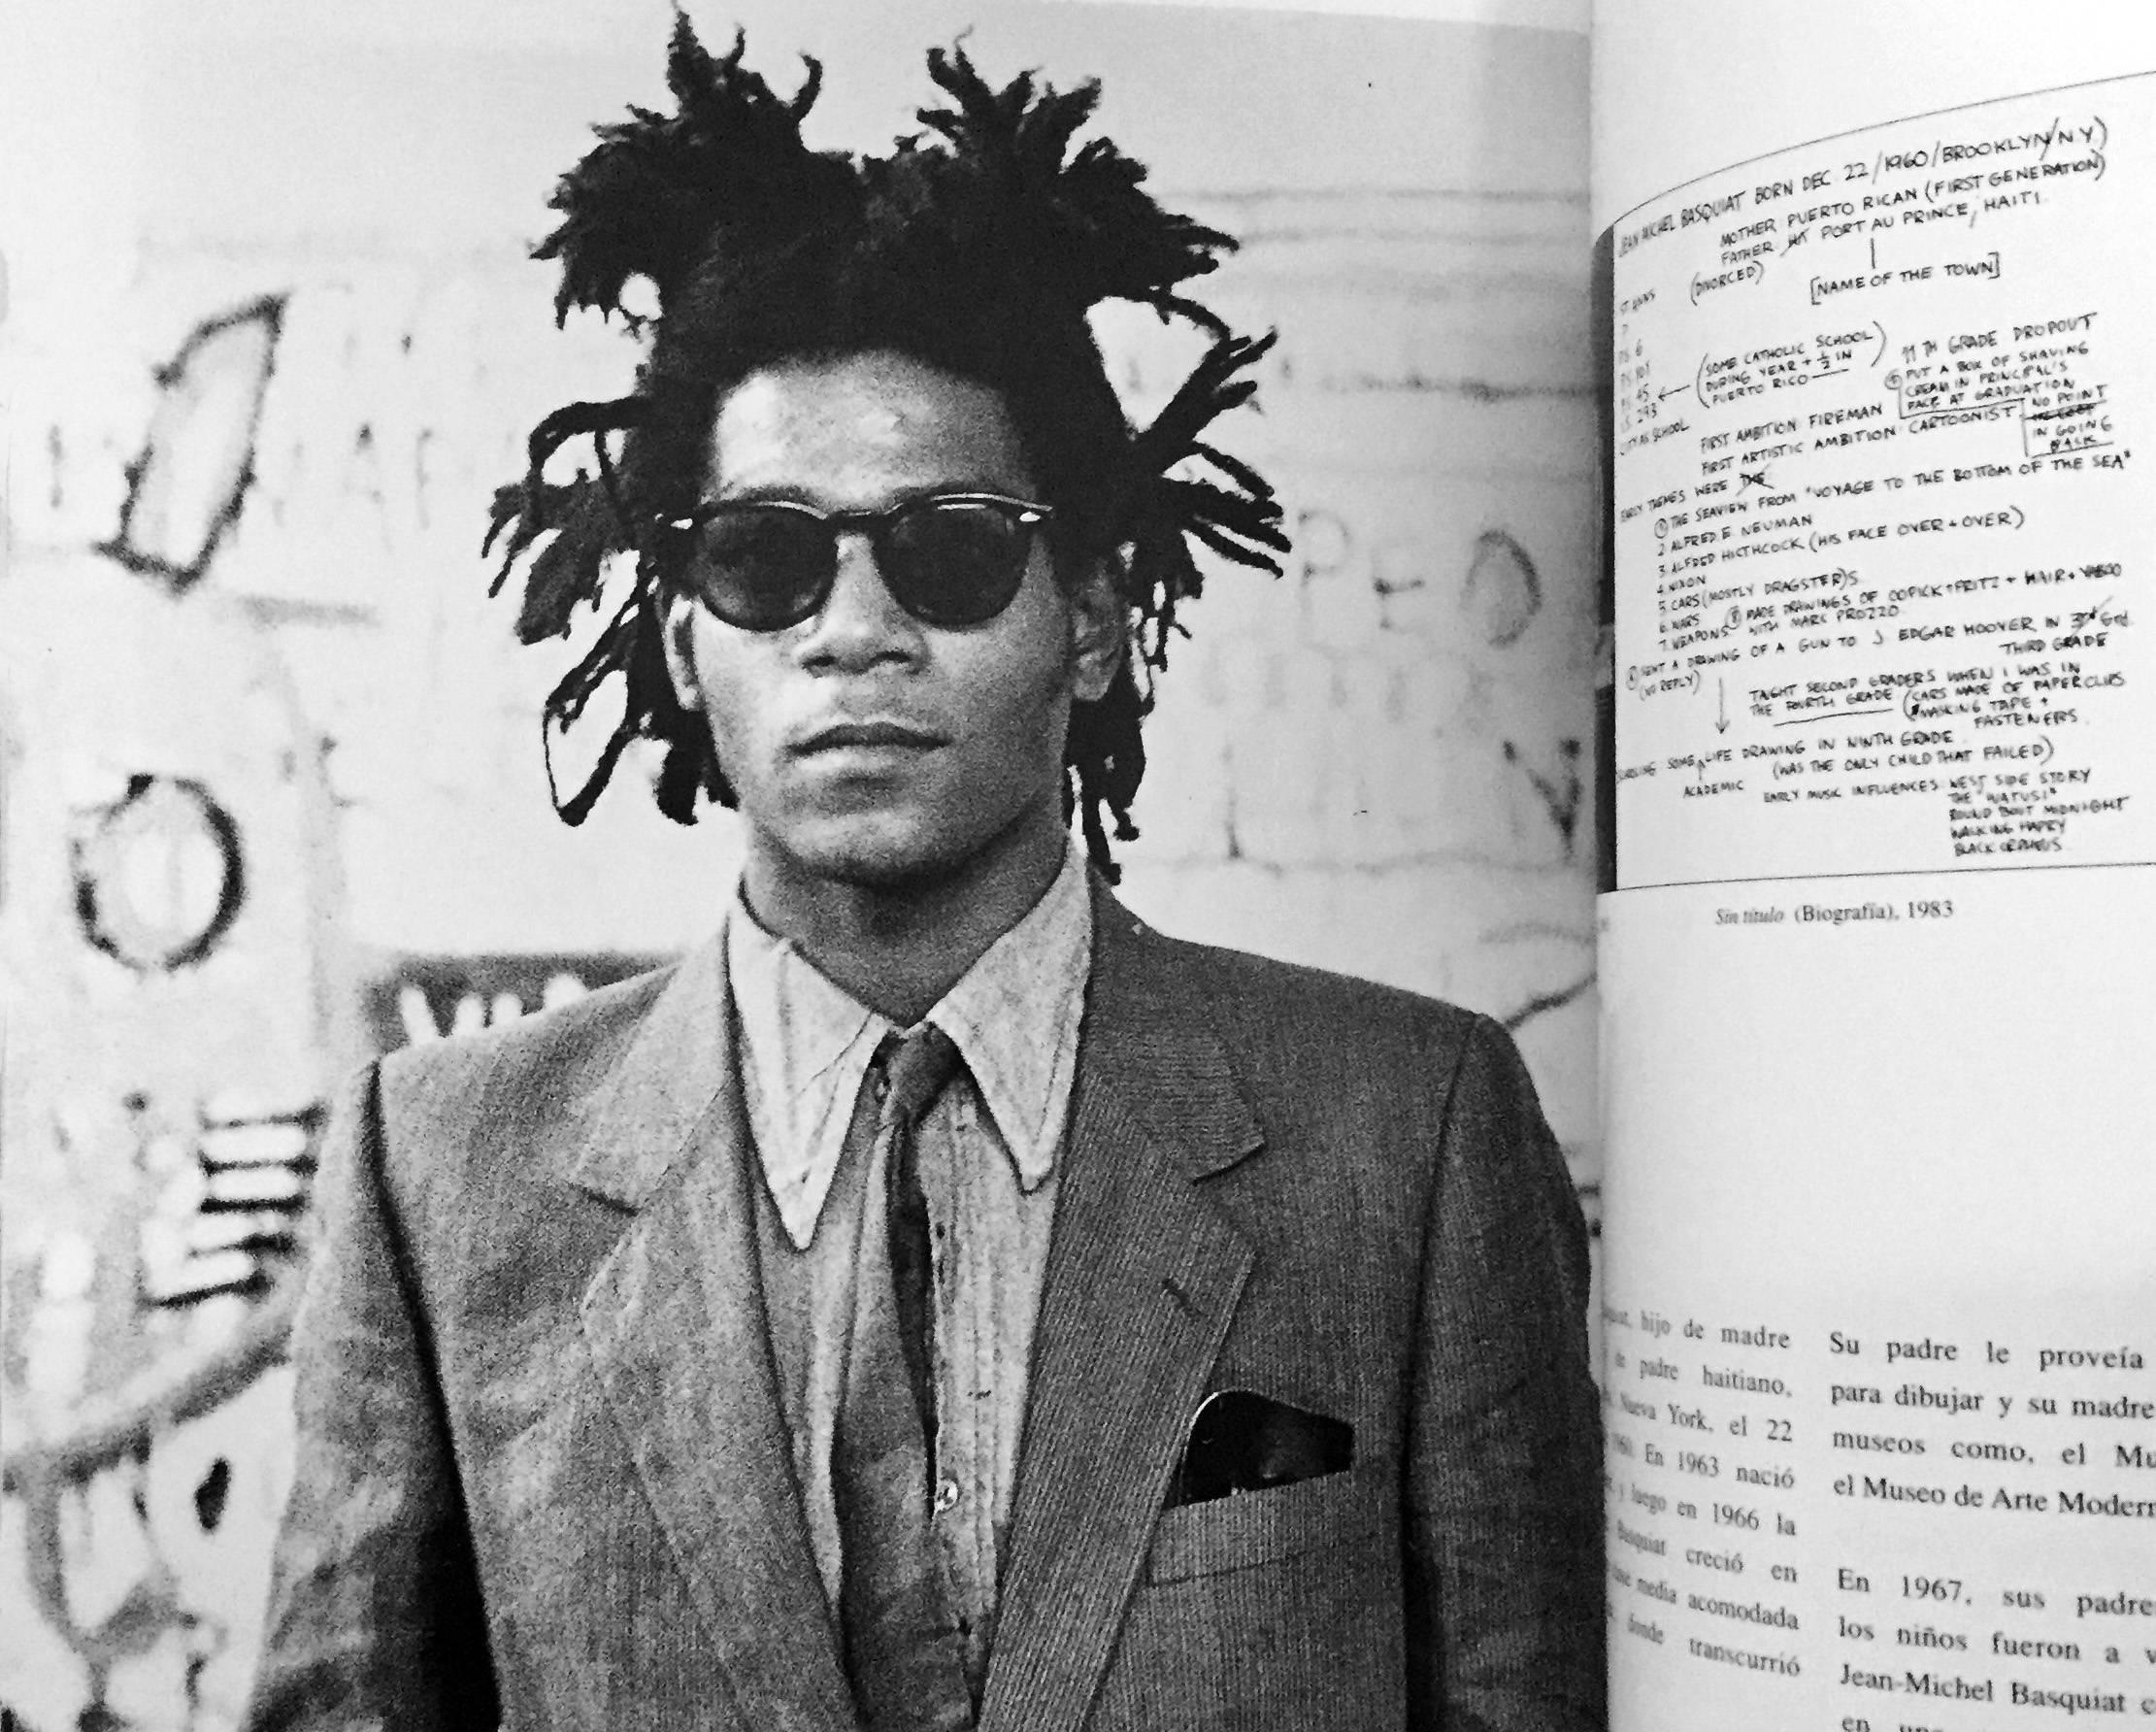 Jean-Michel Basquiat, Œuvres sur papier :  rare catalogue vintage de l'exposition de 1997 au Museu Nacional de Bellas Artes, Buenos Aires, Argentine.

Couverture illustrée avec rabats, 128 pages. 30 x 24 cm (9.5 x 12 inches). Environ 75